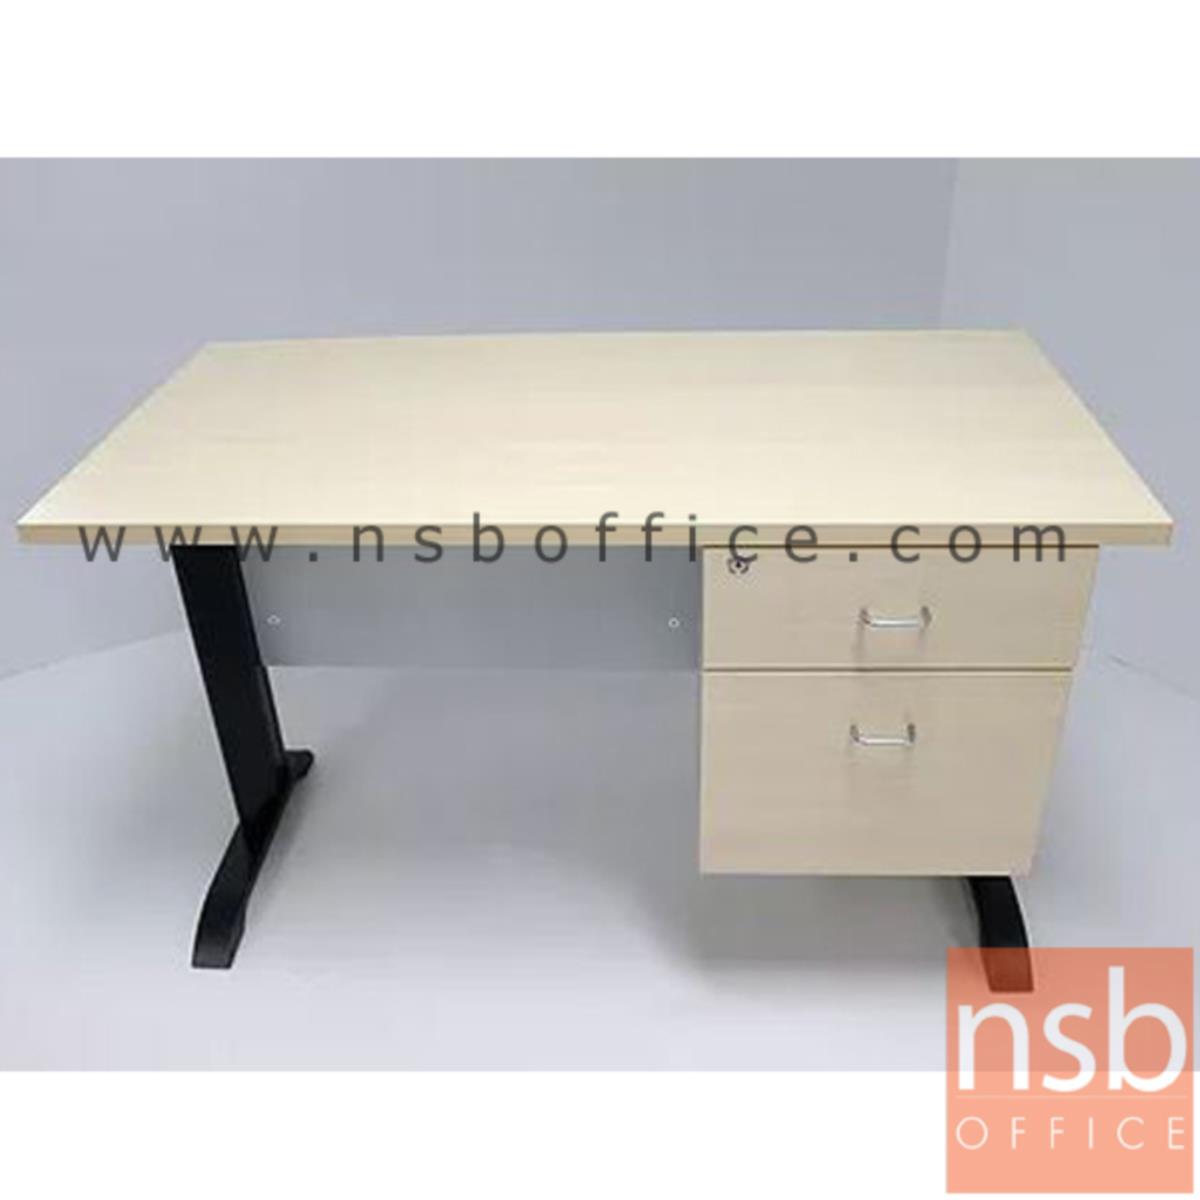 โต๊ะทำงาน 2 ลิ้นชัก รุ่น Sutton (ซัตตัน) 120W, 135W, 150W, 180W (60D) cm. ขาเหล็กตัวแอล